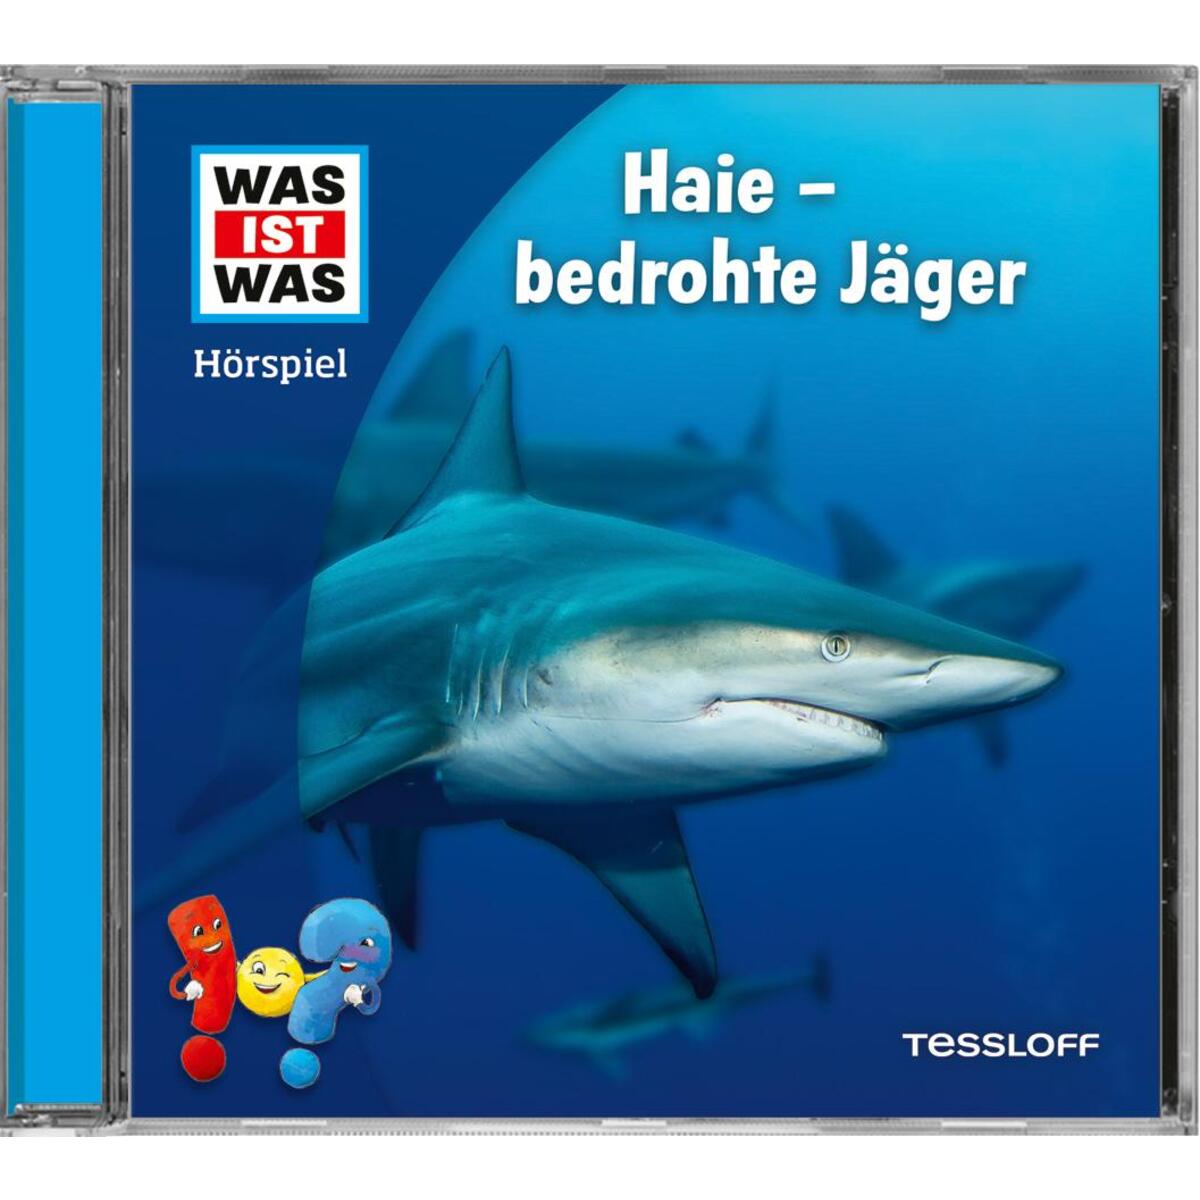 WAS IST WAS Hörspiel. Haie - bedrohte Jäger von Tessloff Verlag